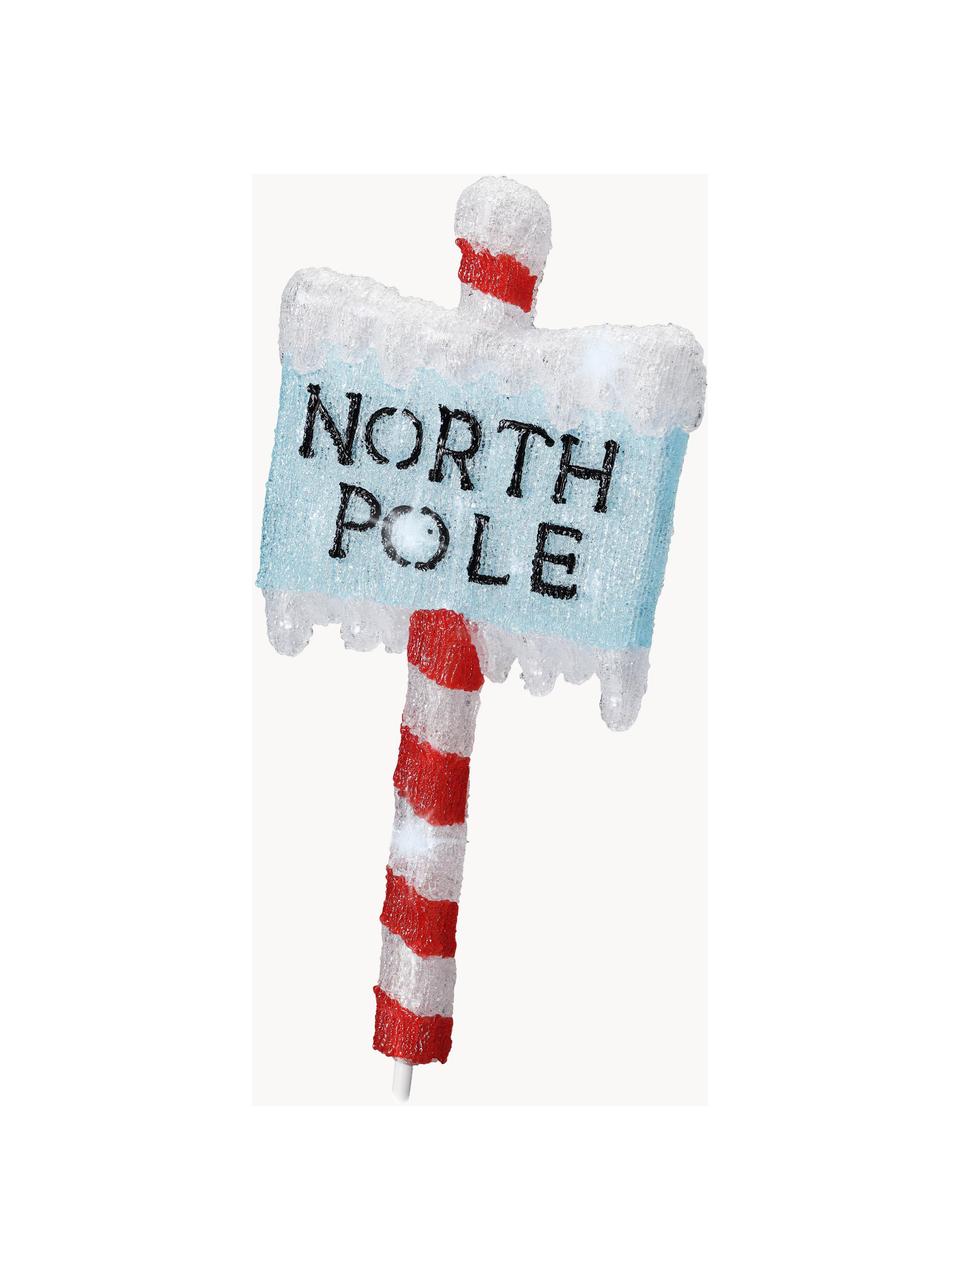 Světelná LED dekorace se zástrčkou North Pole, V 93 cm, Umělá hmota, Červená, modrá, bílá, Š 35 cm, V 93 cm